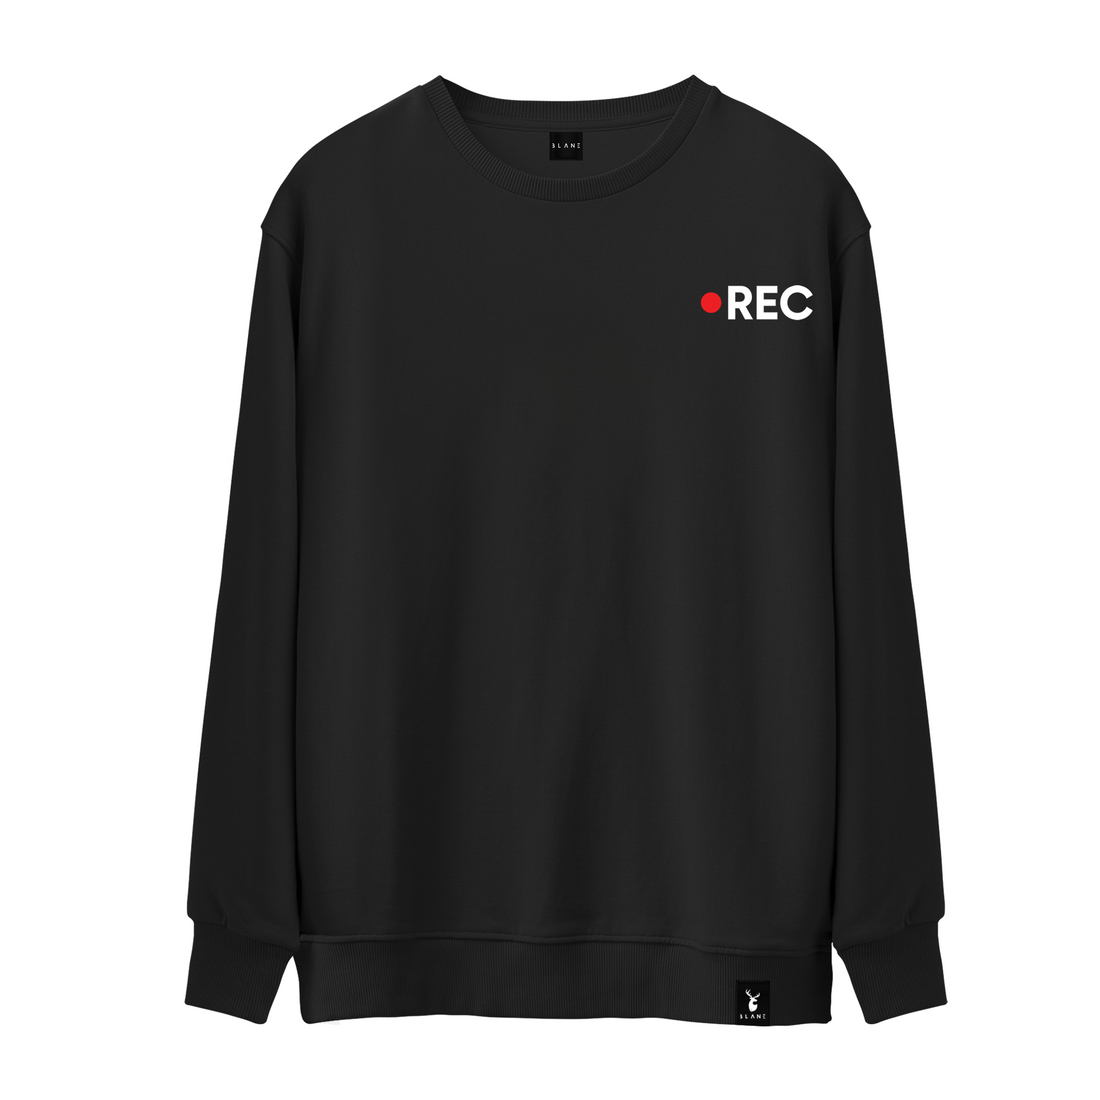 Rec - Sweatshirt